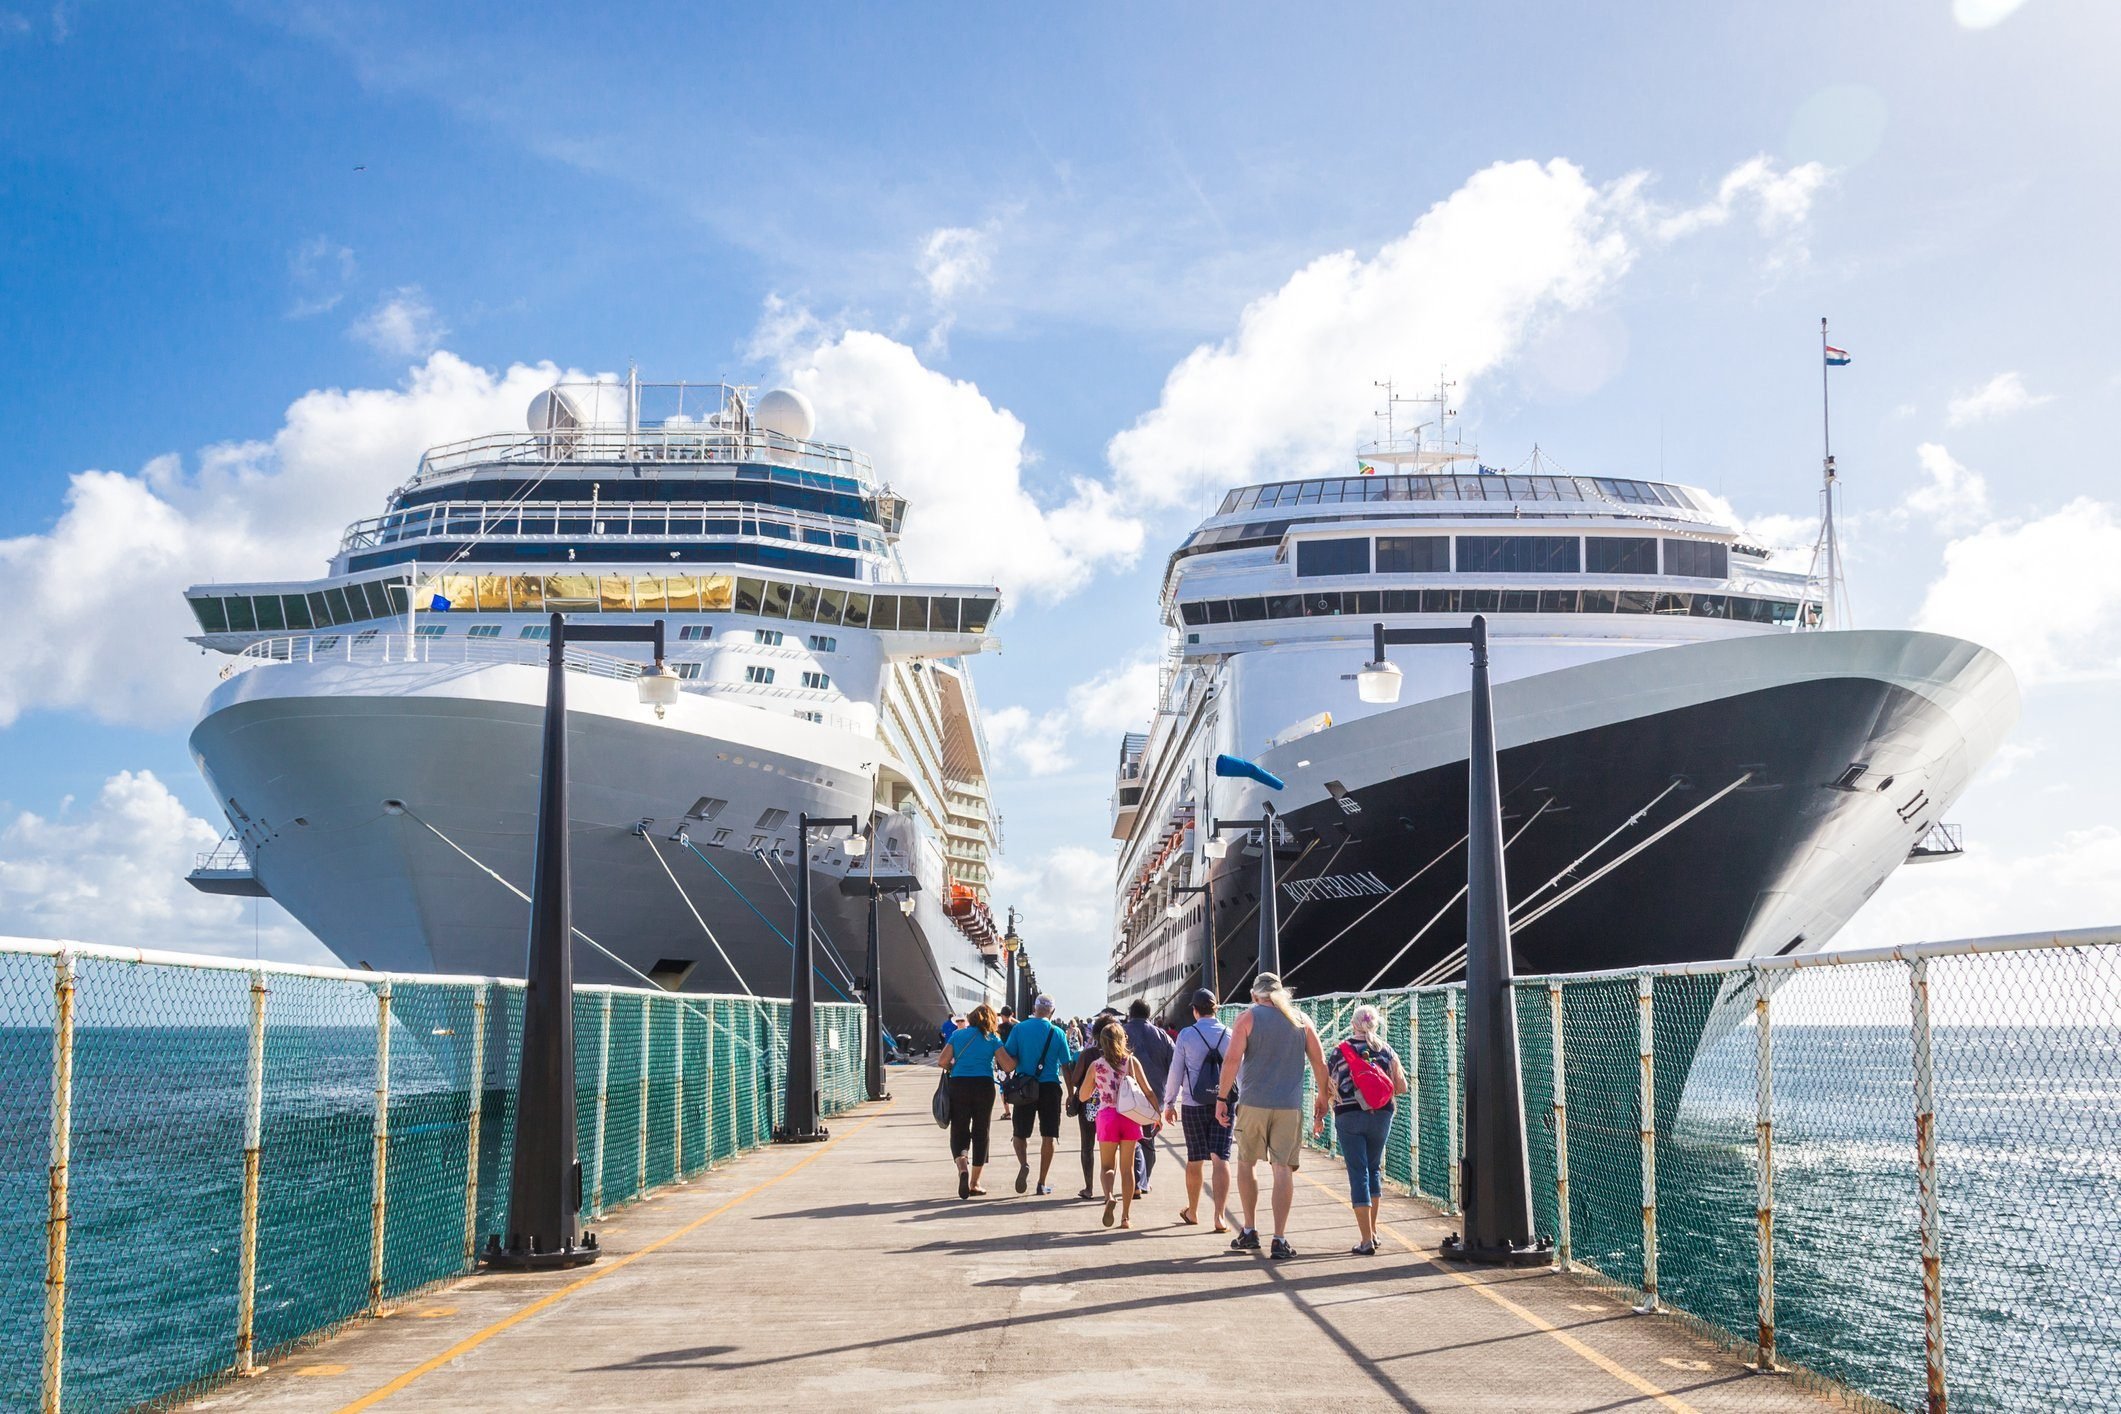 Cruise passengers return to cruise ships